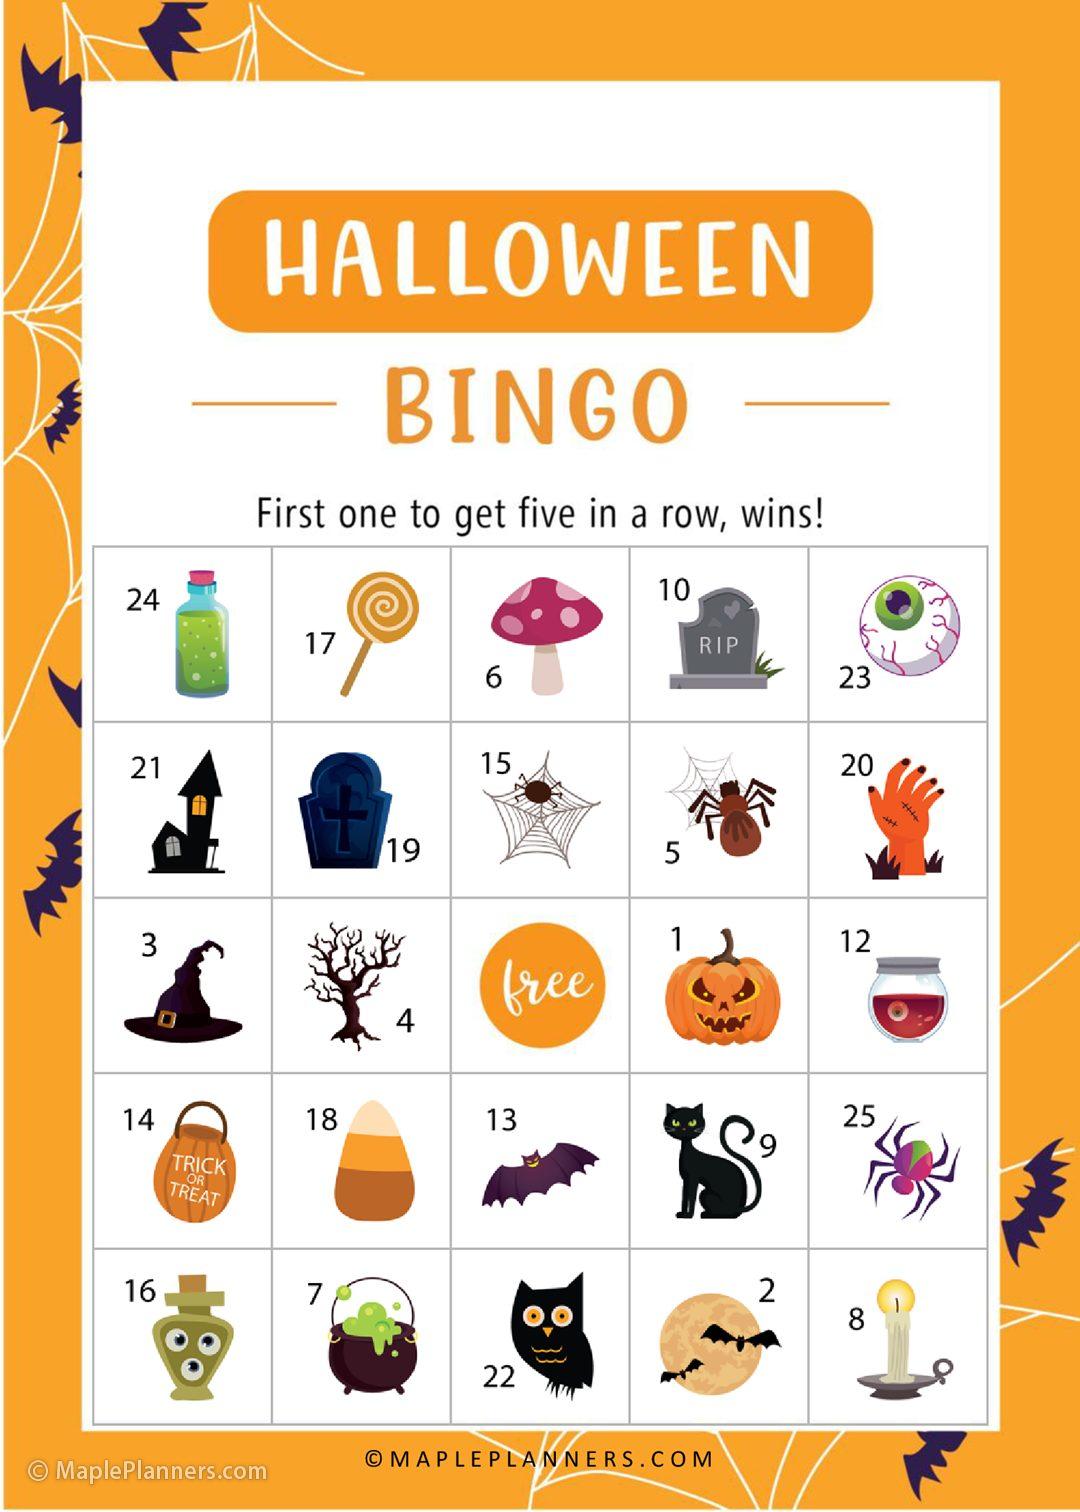 Halloween Bingo Game Printable for Kids